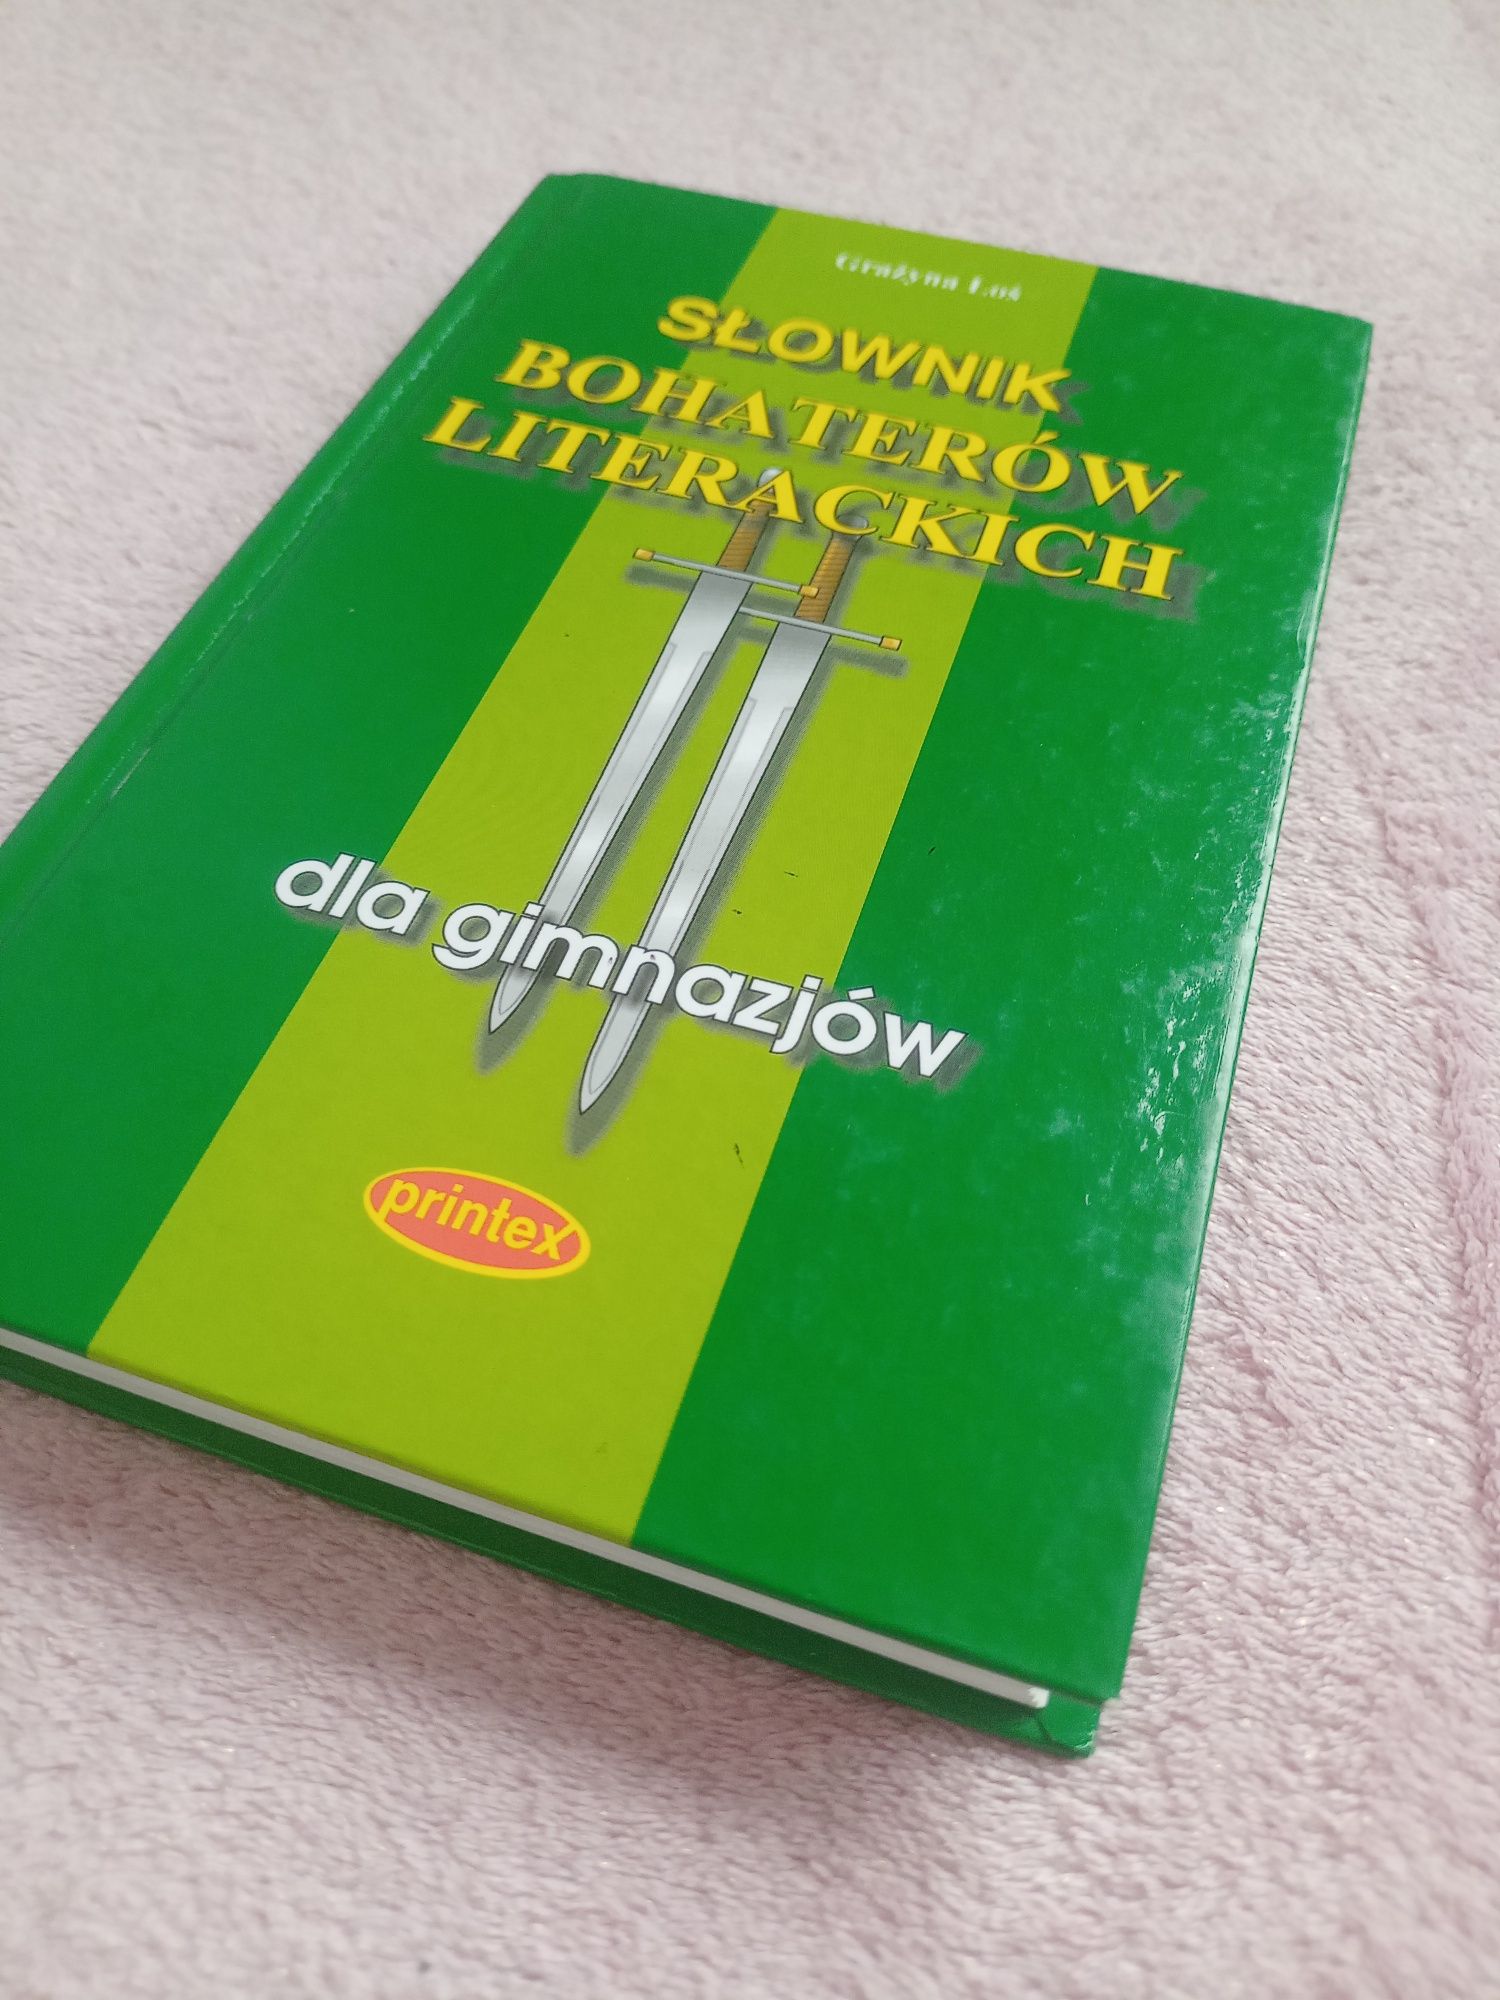 *Słownik bohaterów literackich dla gimnazjum, printex, Grażyna Łoś*